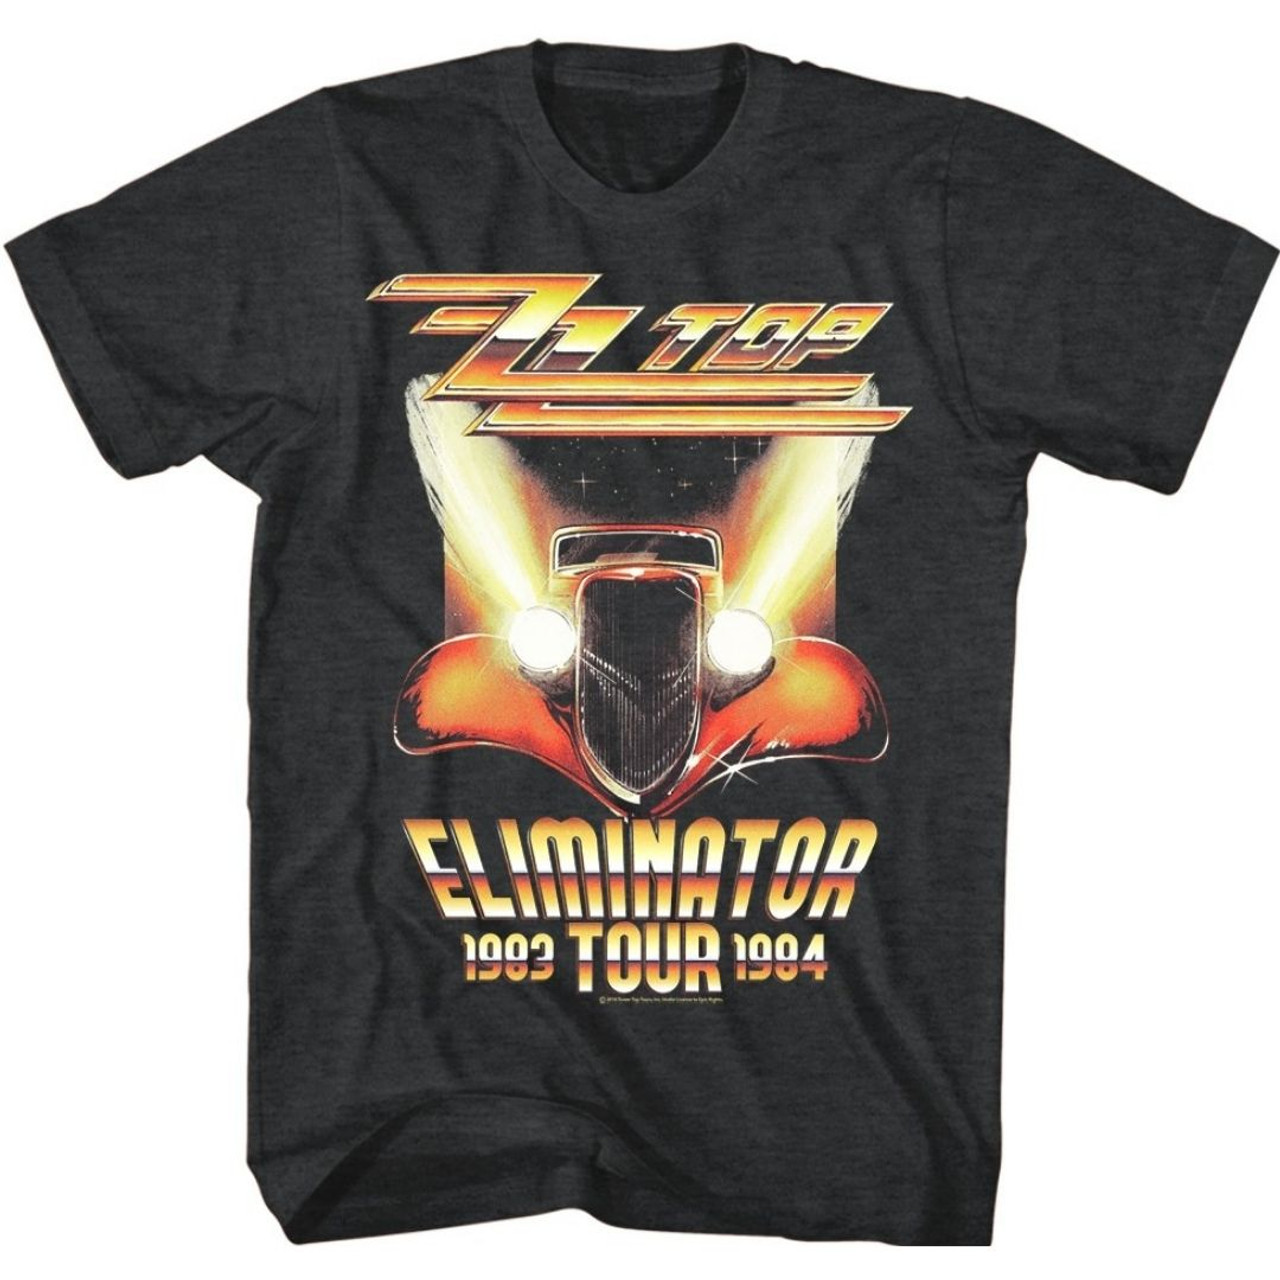 ZZ Top Eliminator Tour 1983-1984 Men's Unisex Concert T-shirt